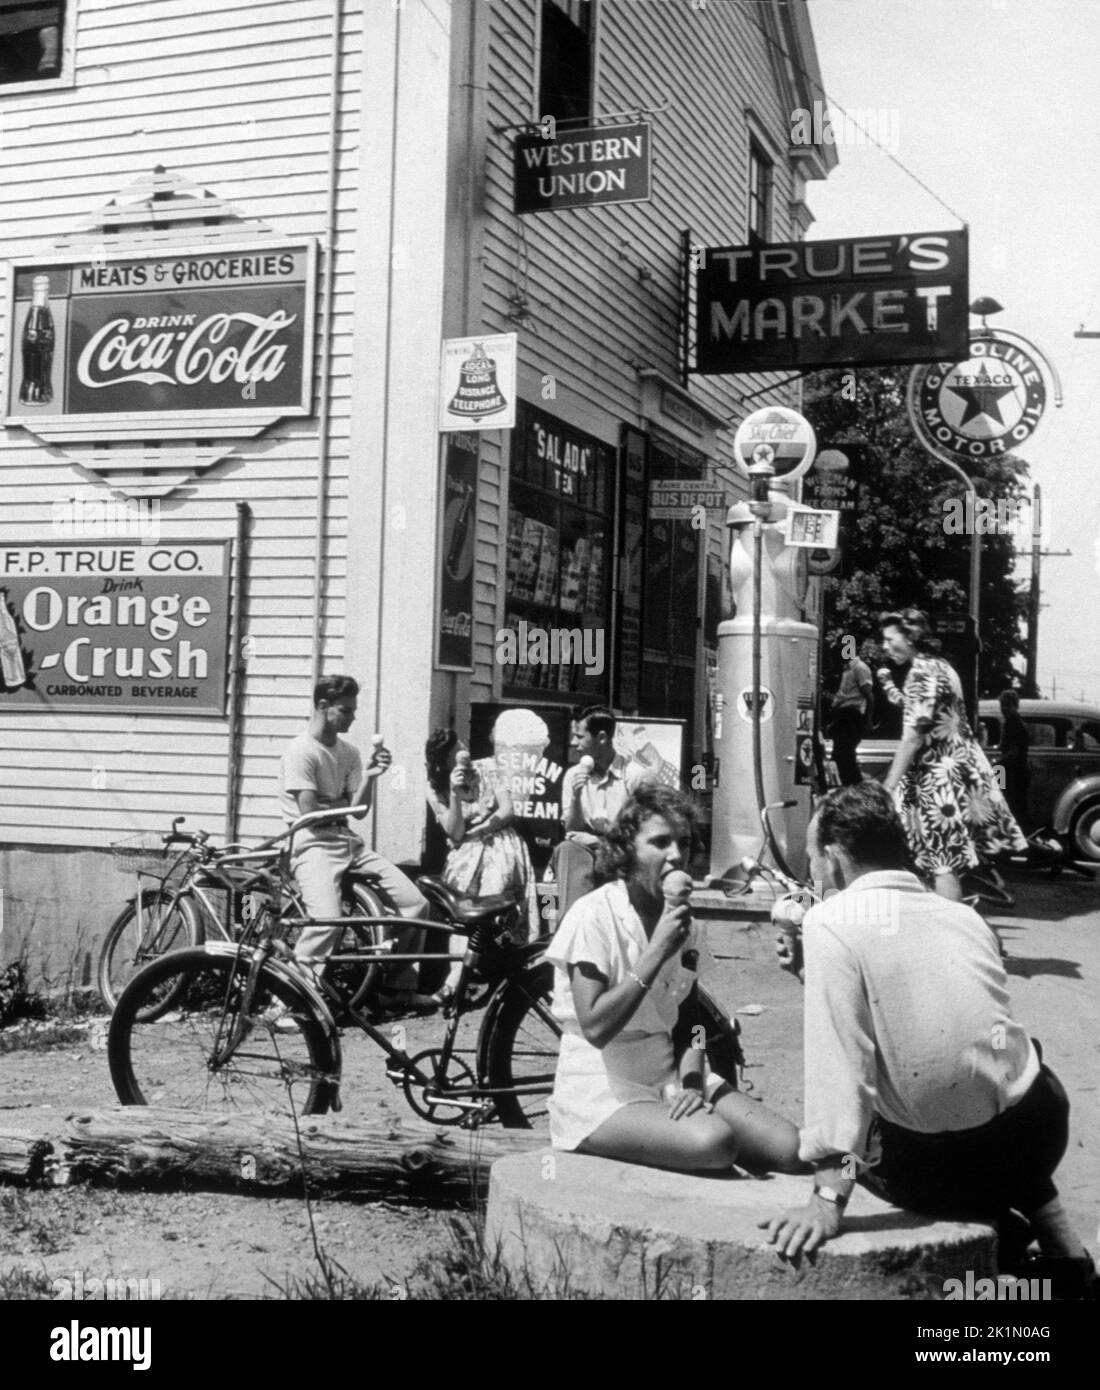 Les cyclistes profitent d'une pause glace. Photographie prise dans les années 1950. Banque D'Images